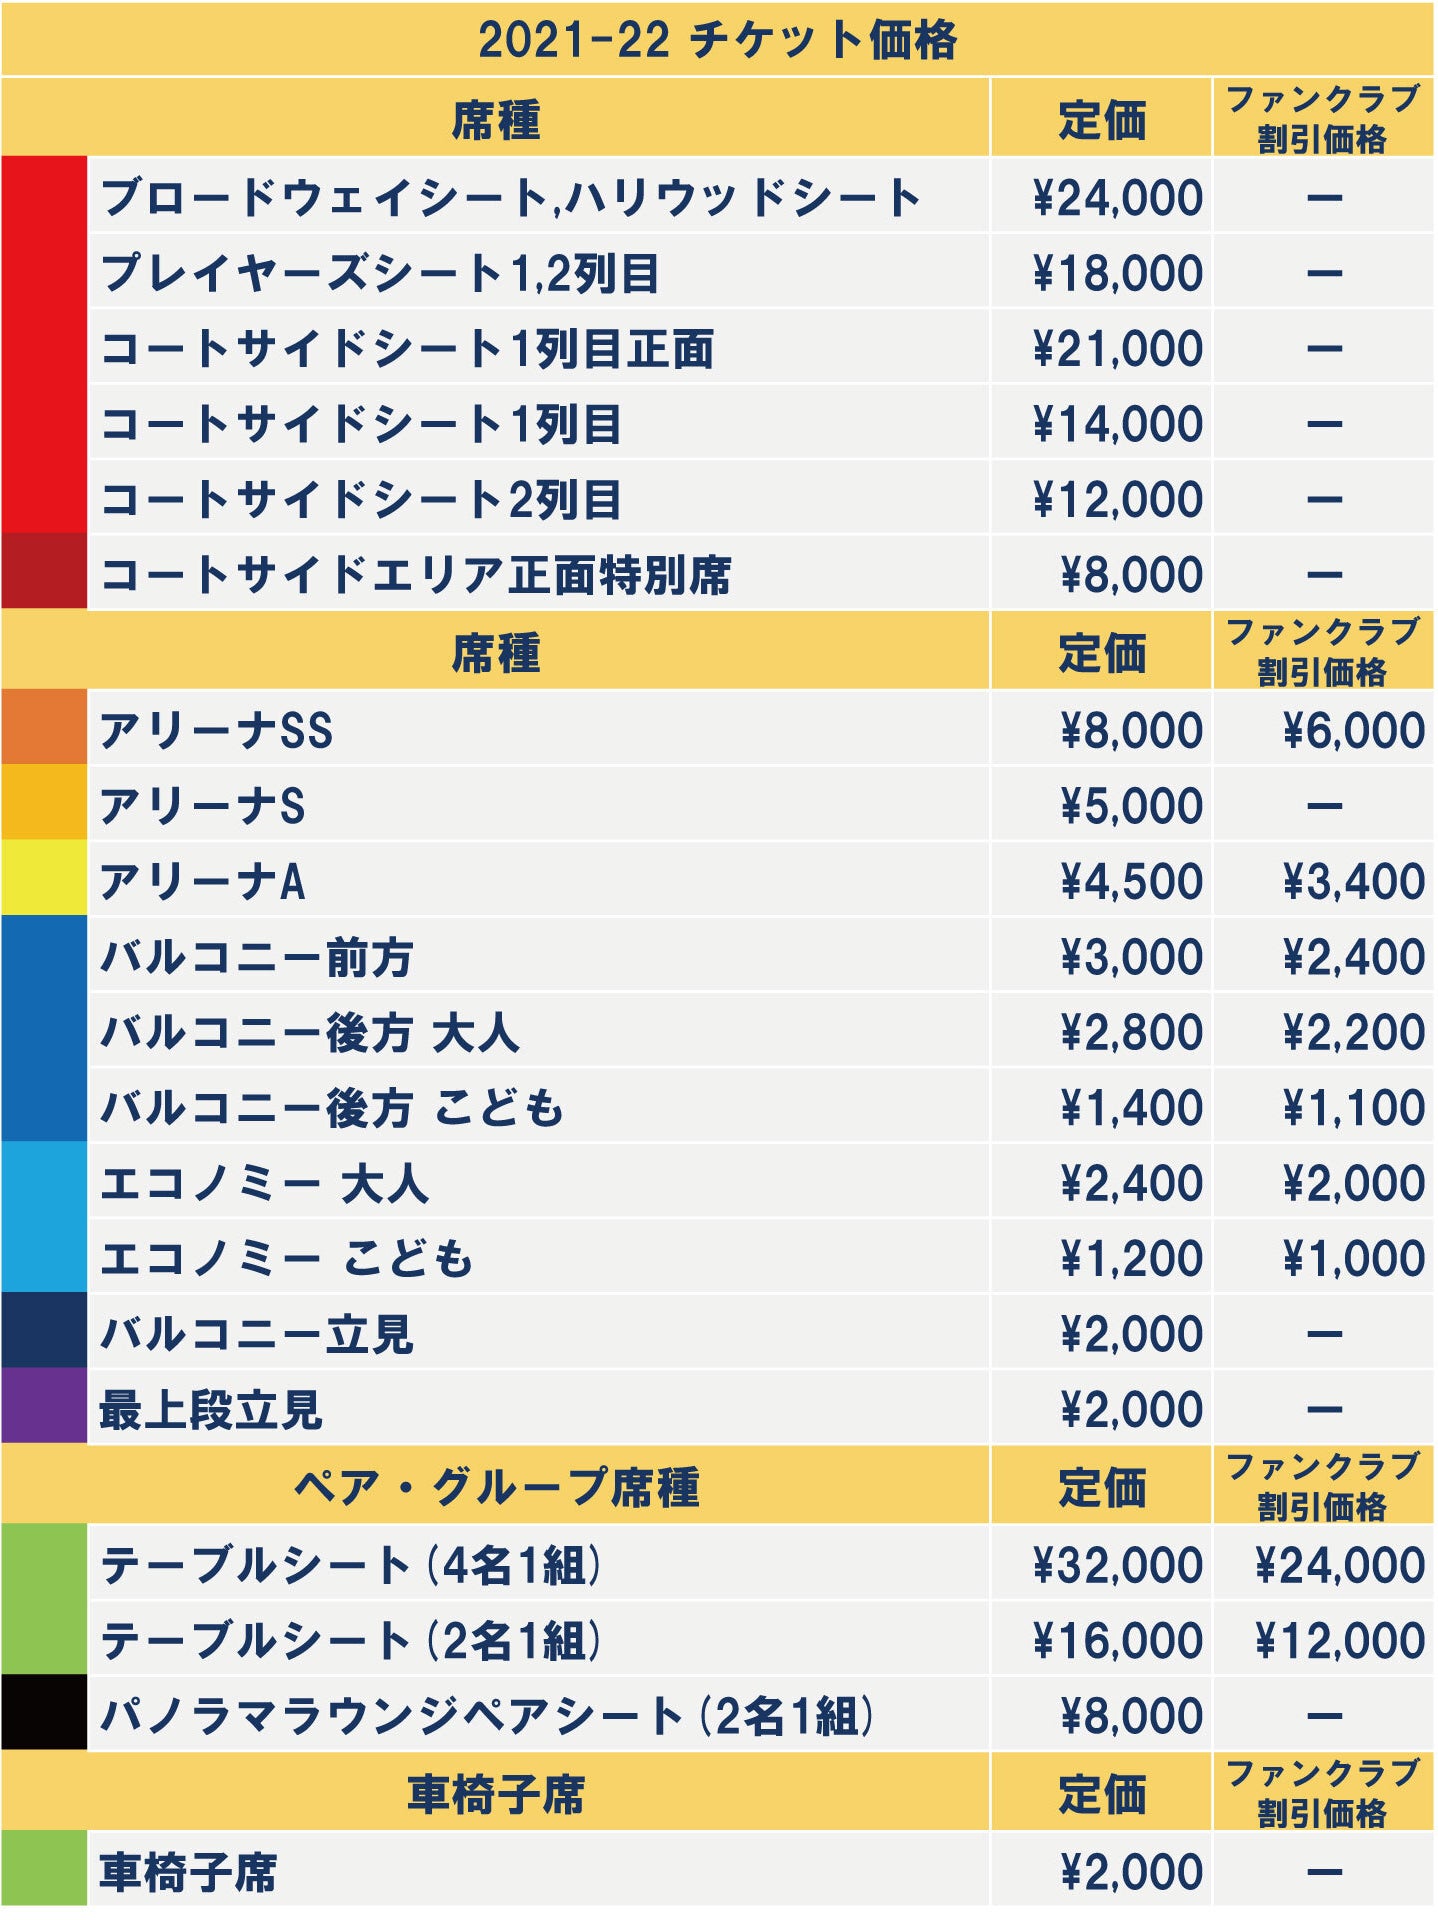 チケット情報 21 22シーズン 琉球ゴールデンキングス 琉球ゴールデンキングス